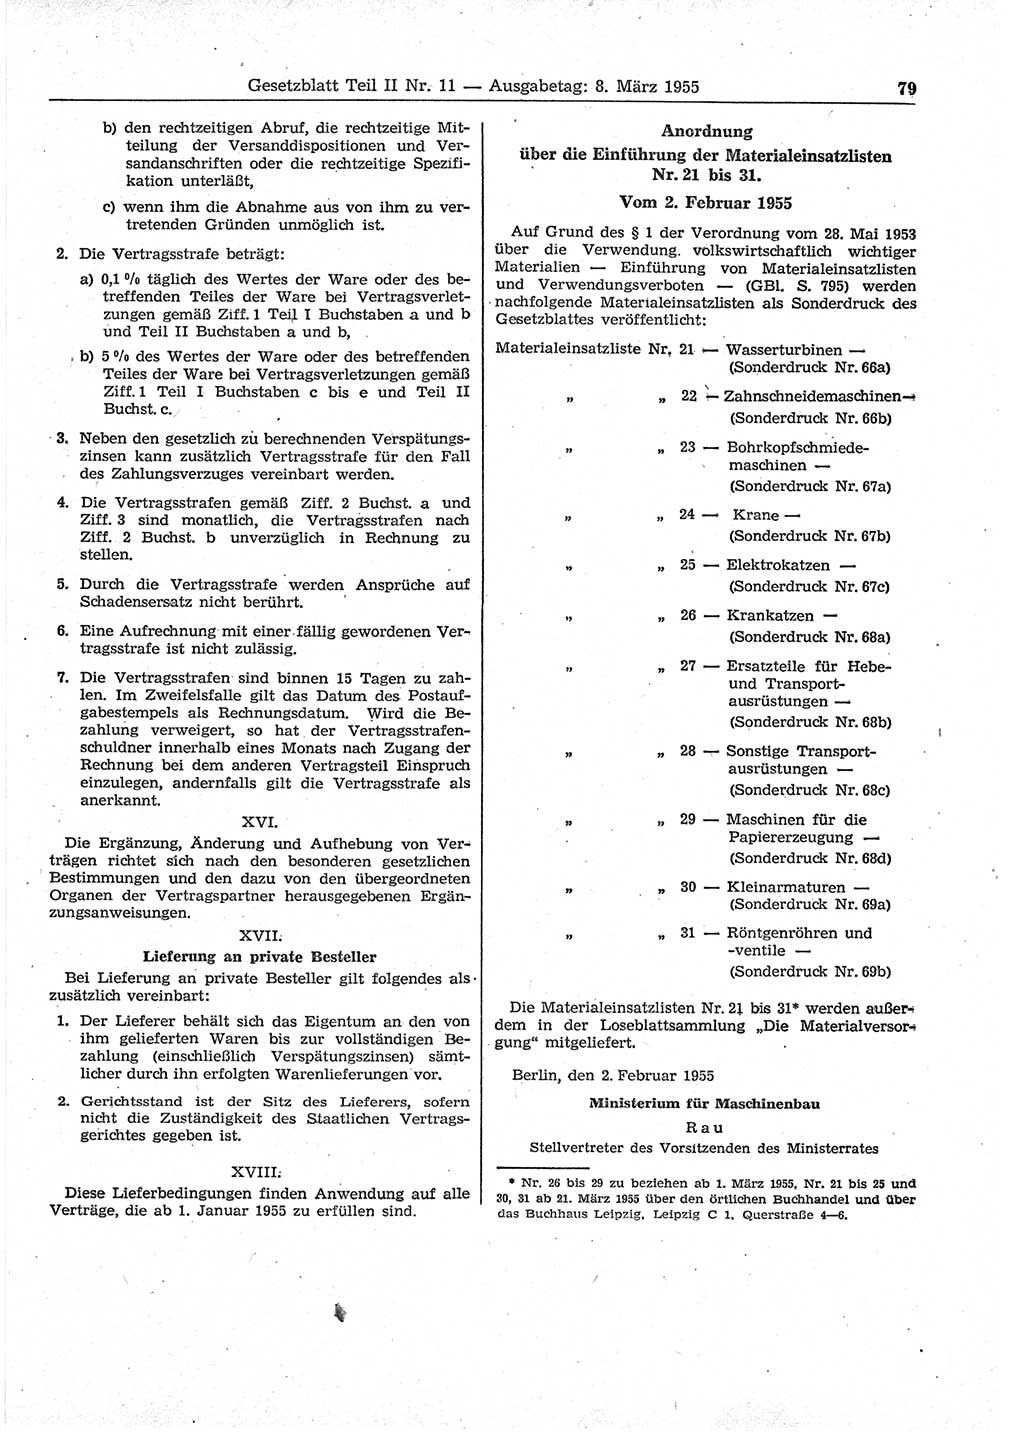 Gesetzblatt (GBl.) der Deutschen Demokratischen Republik (DDR) Teil ⅠⅠ 1955, Seite 79 (GBl. DDR ⅠⅠ 1955, S. 79)